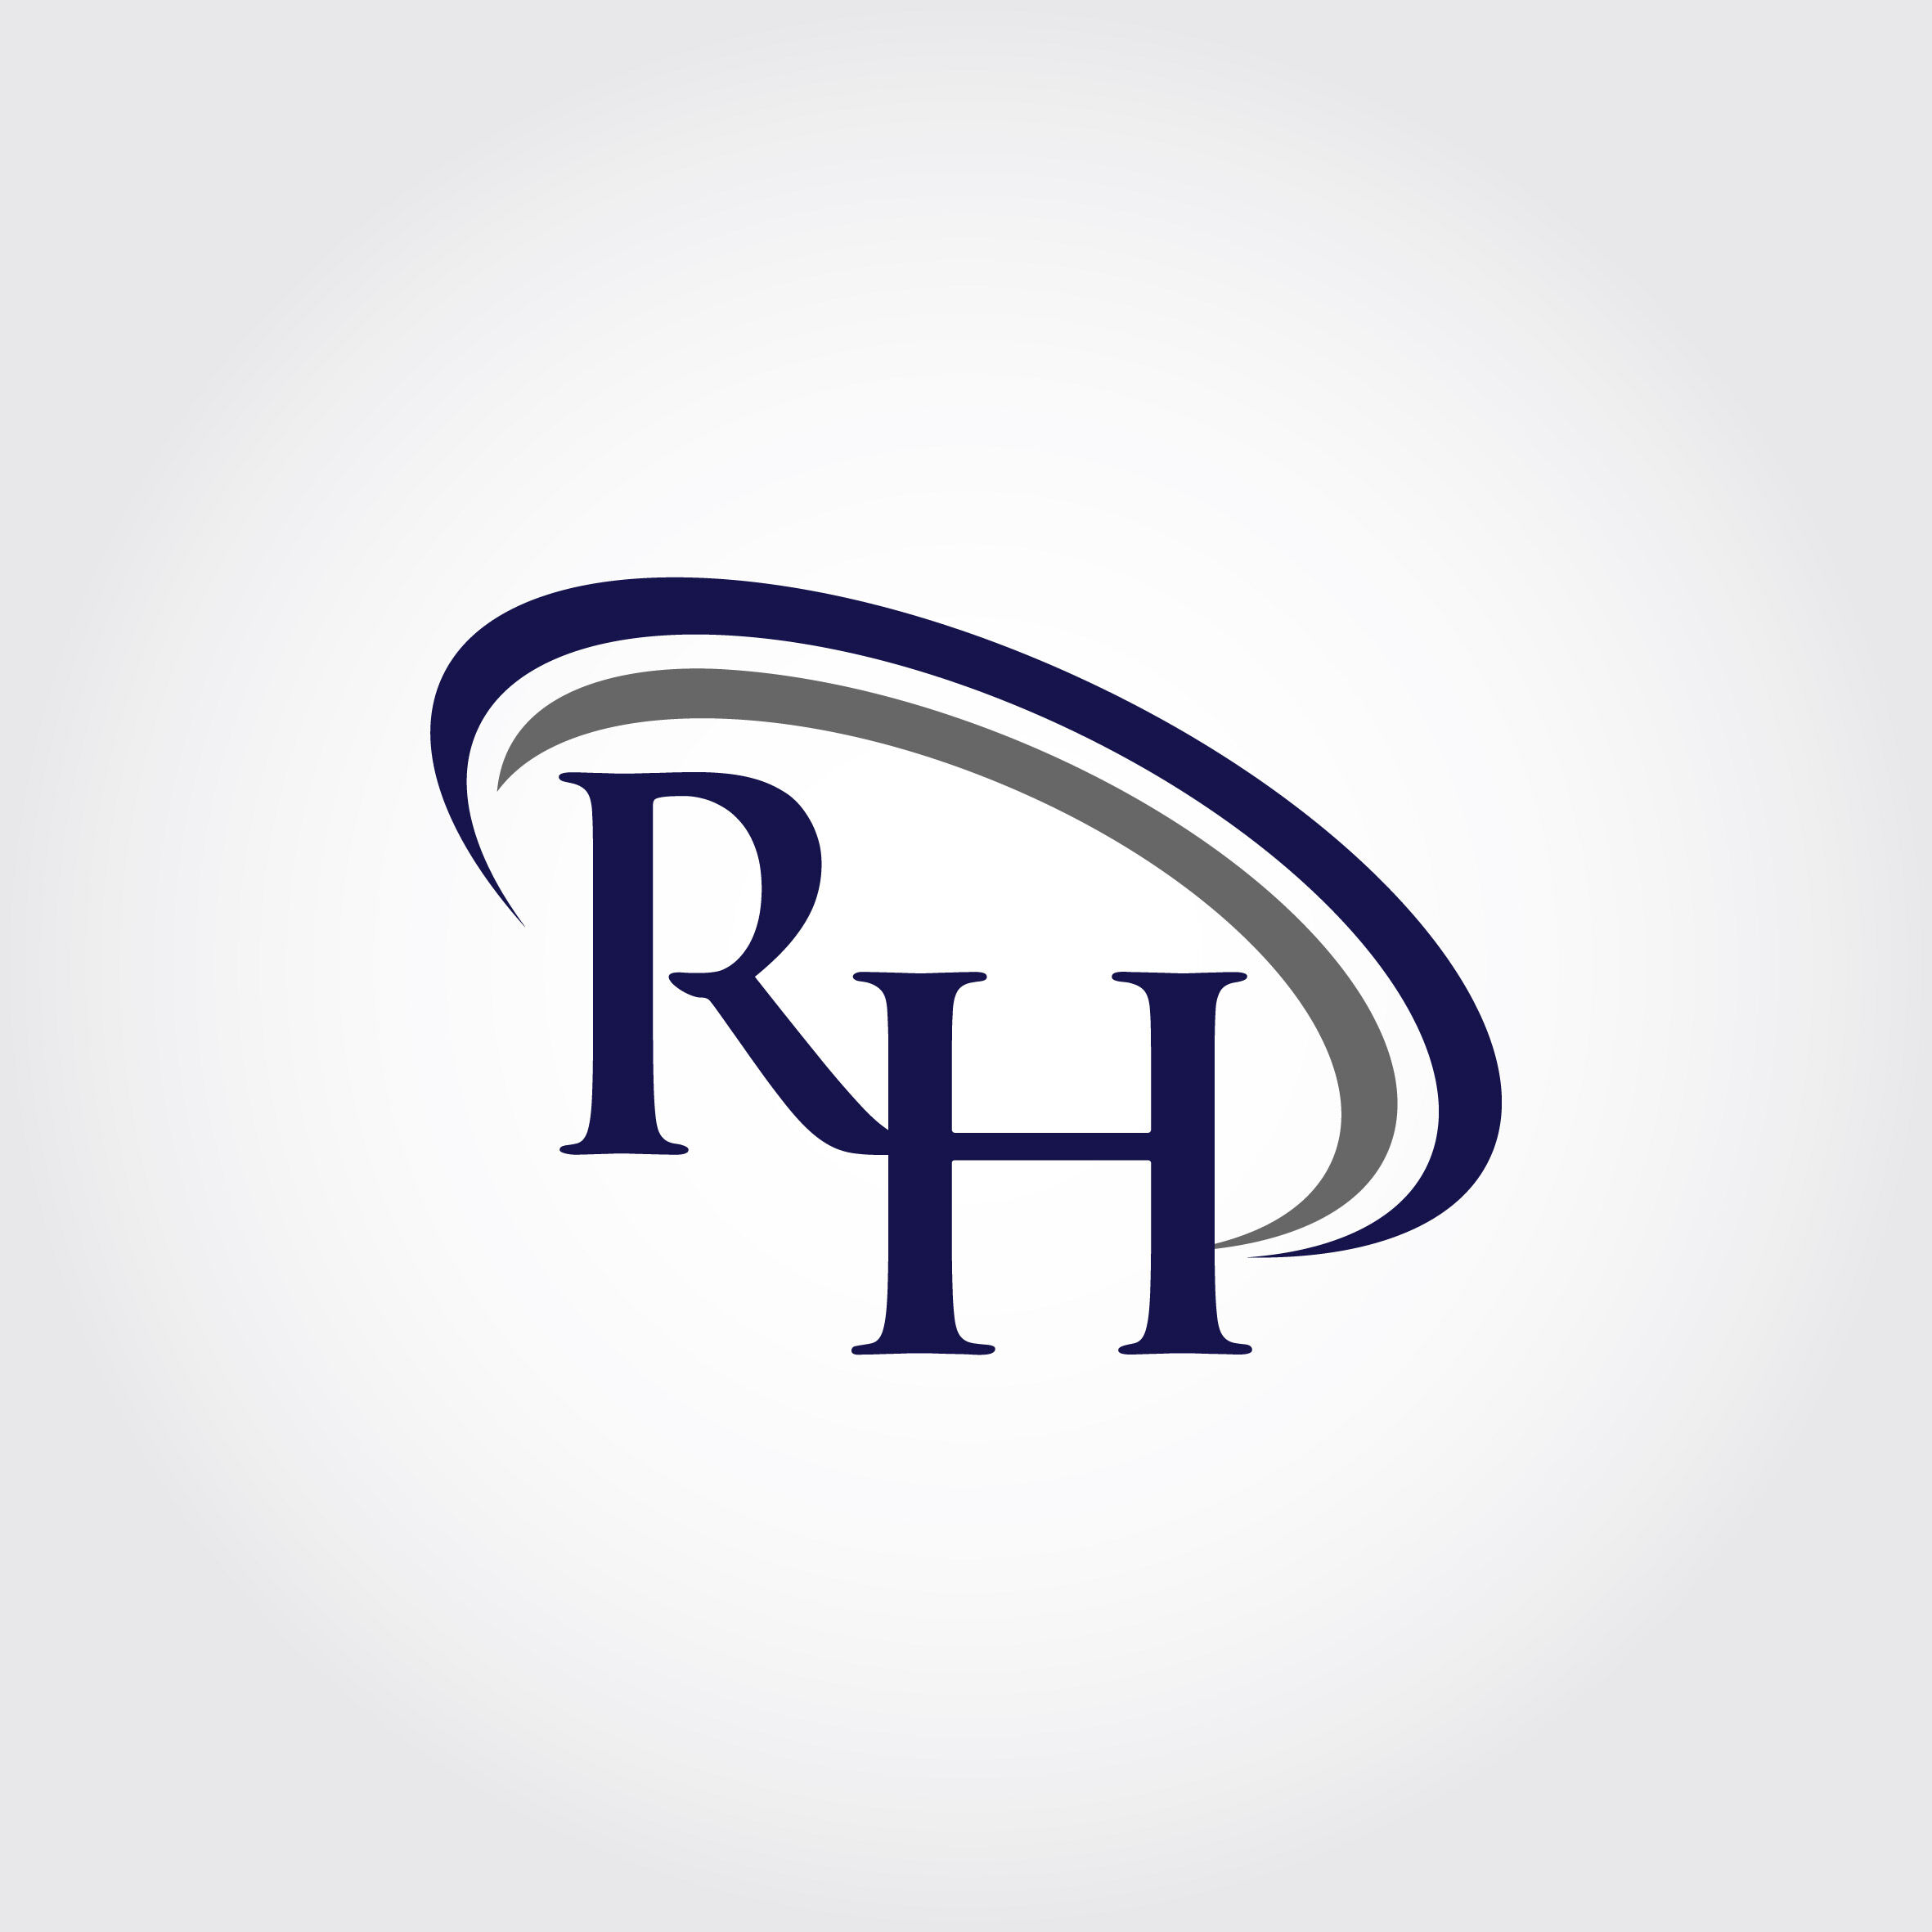 RH logo by logojoss on Dribbble